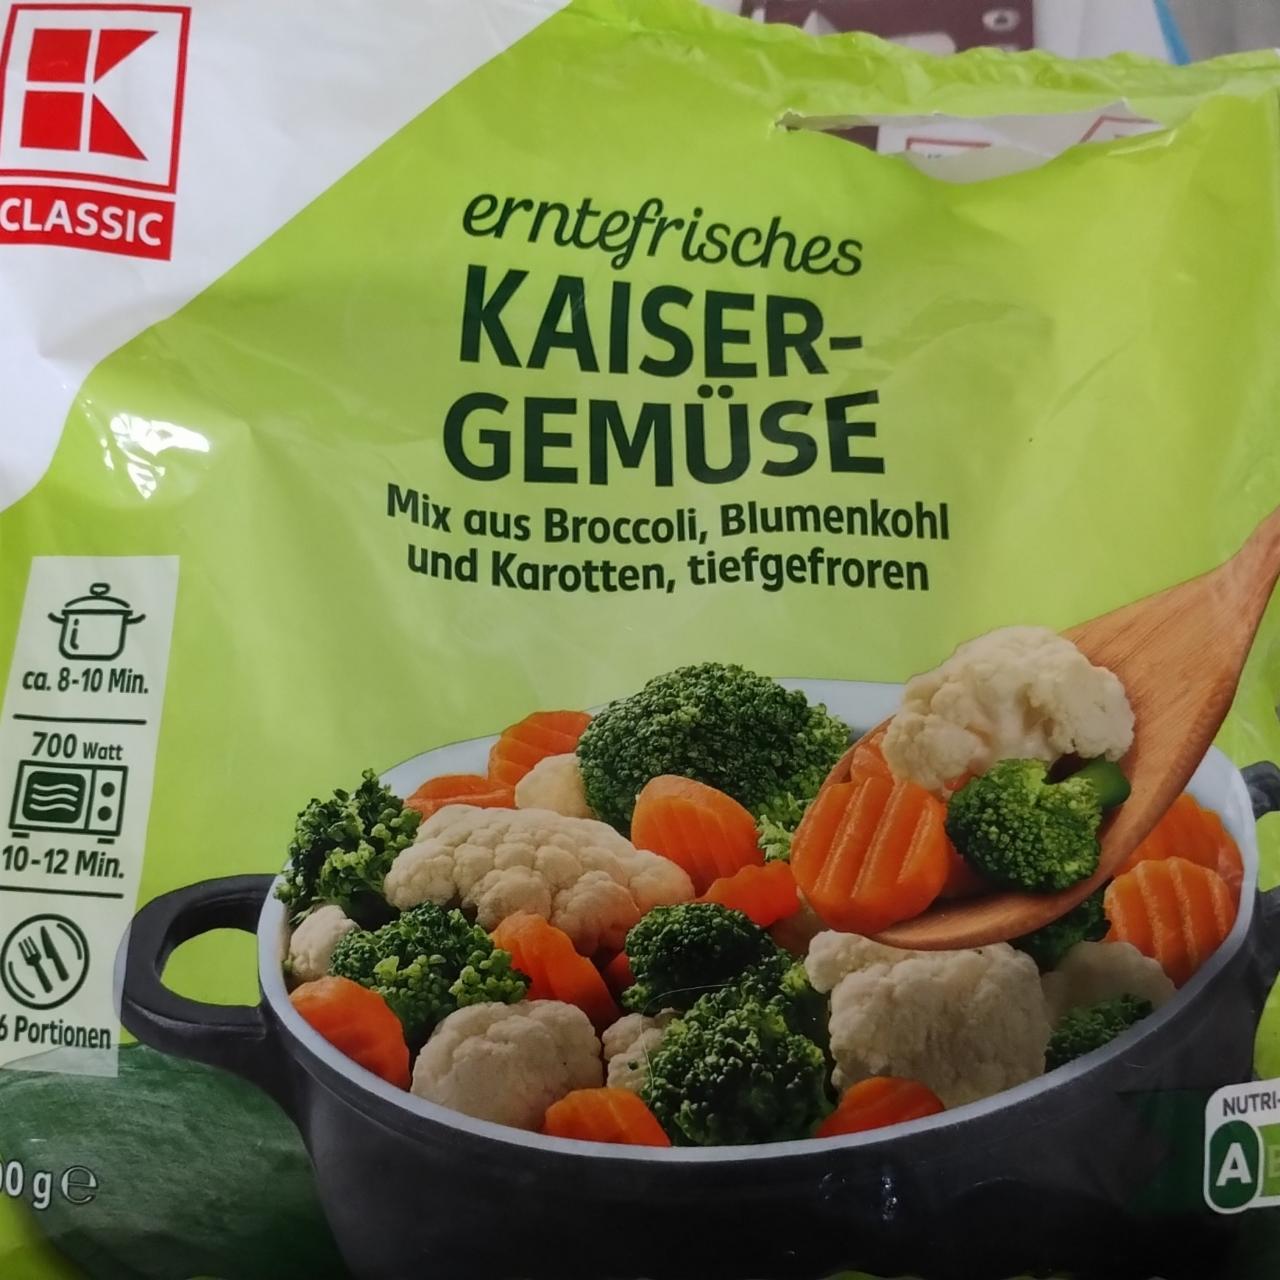 Fotografie - Kaisergemüse Mix aus Broccoli, Blumenkohl und Karotten, tiefgefroren K-Classic